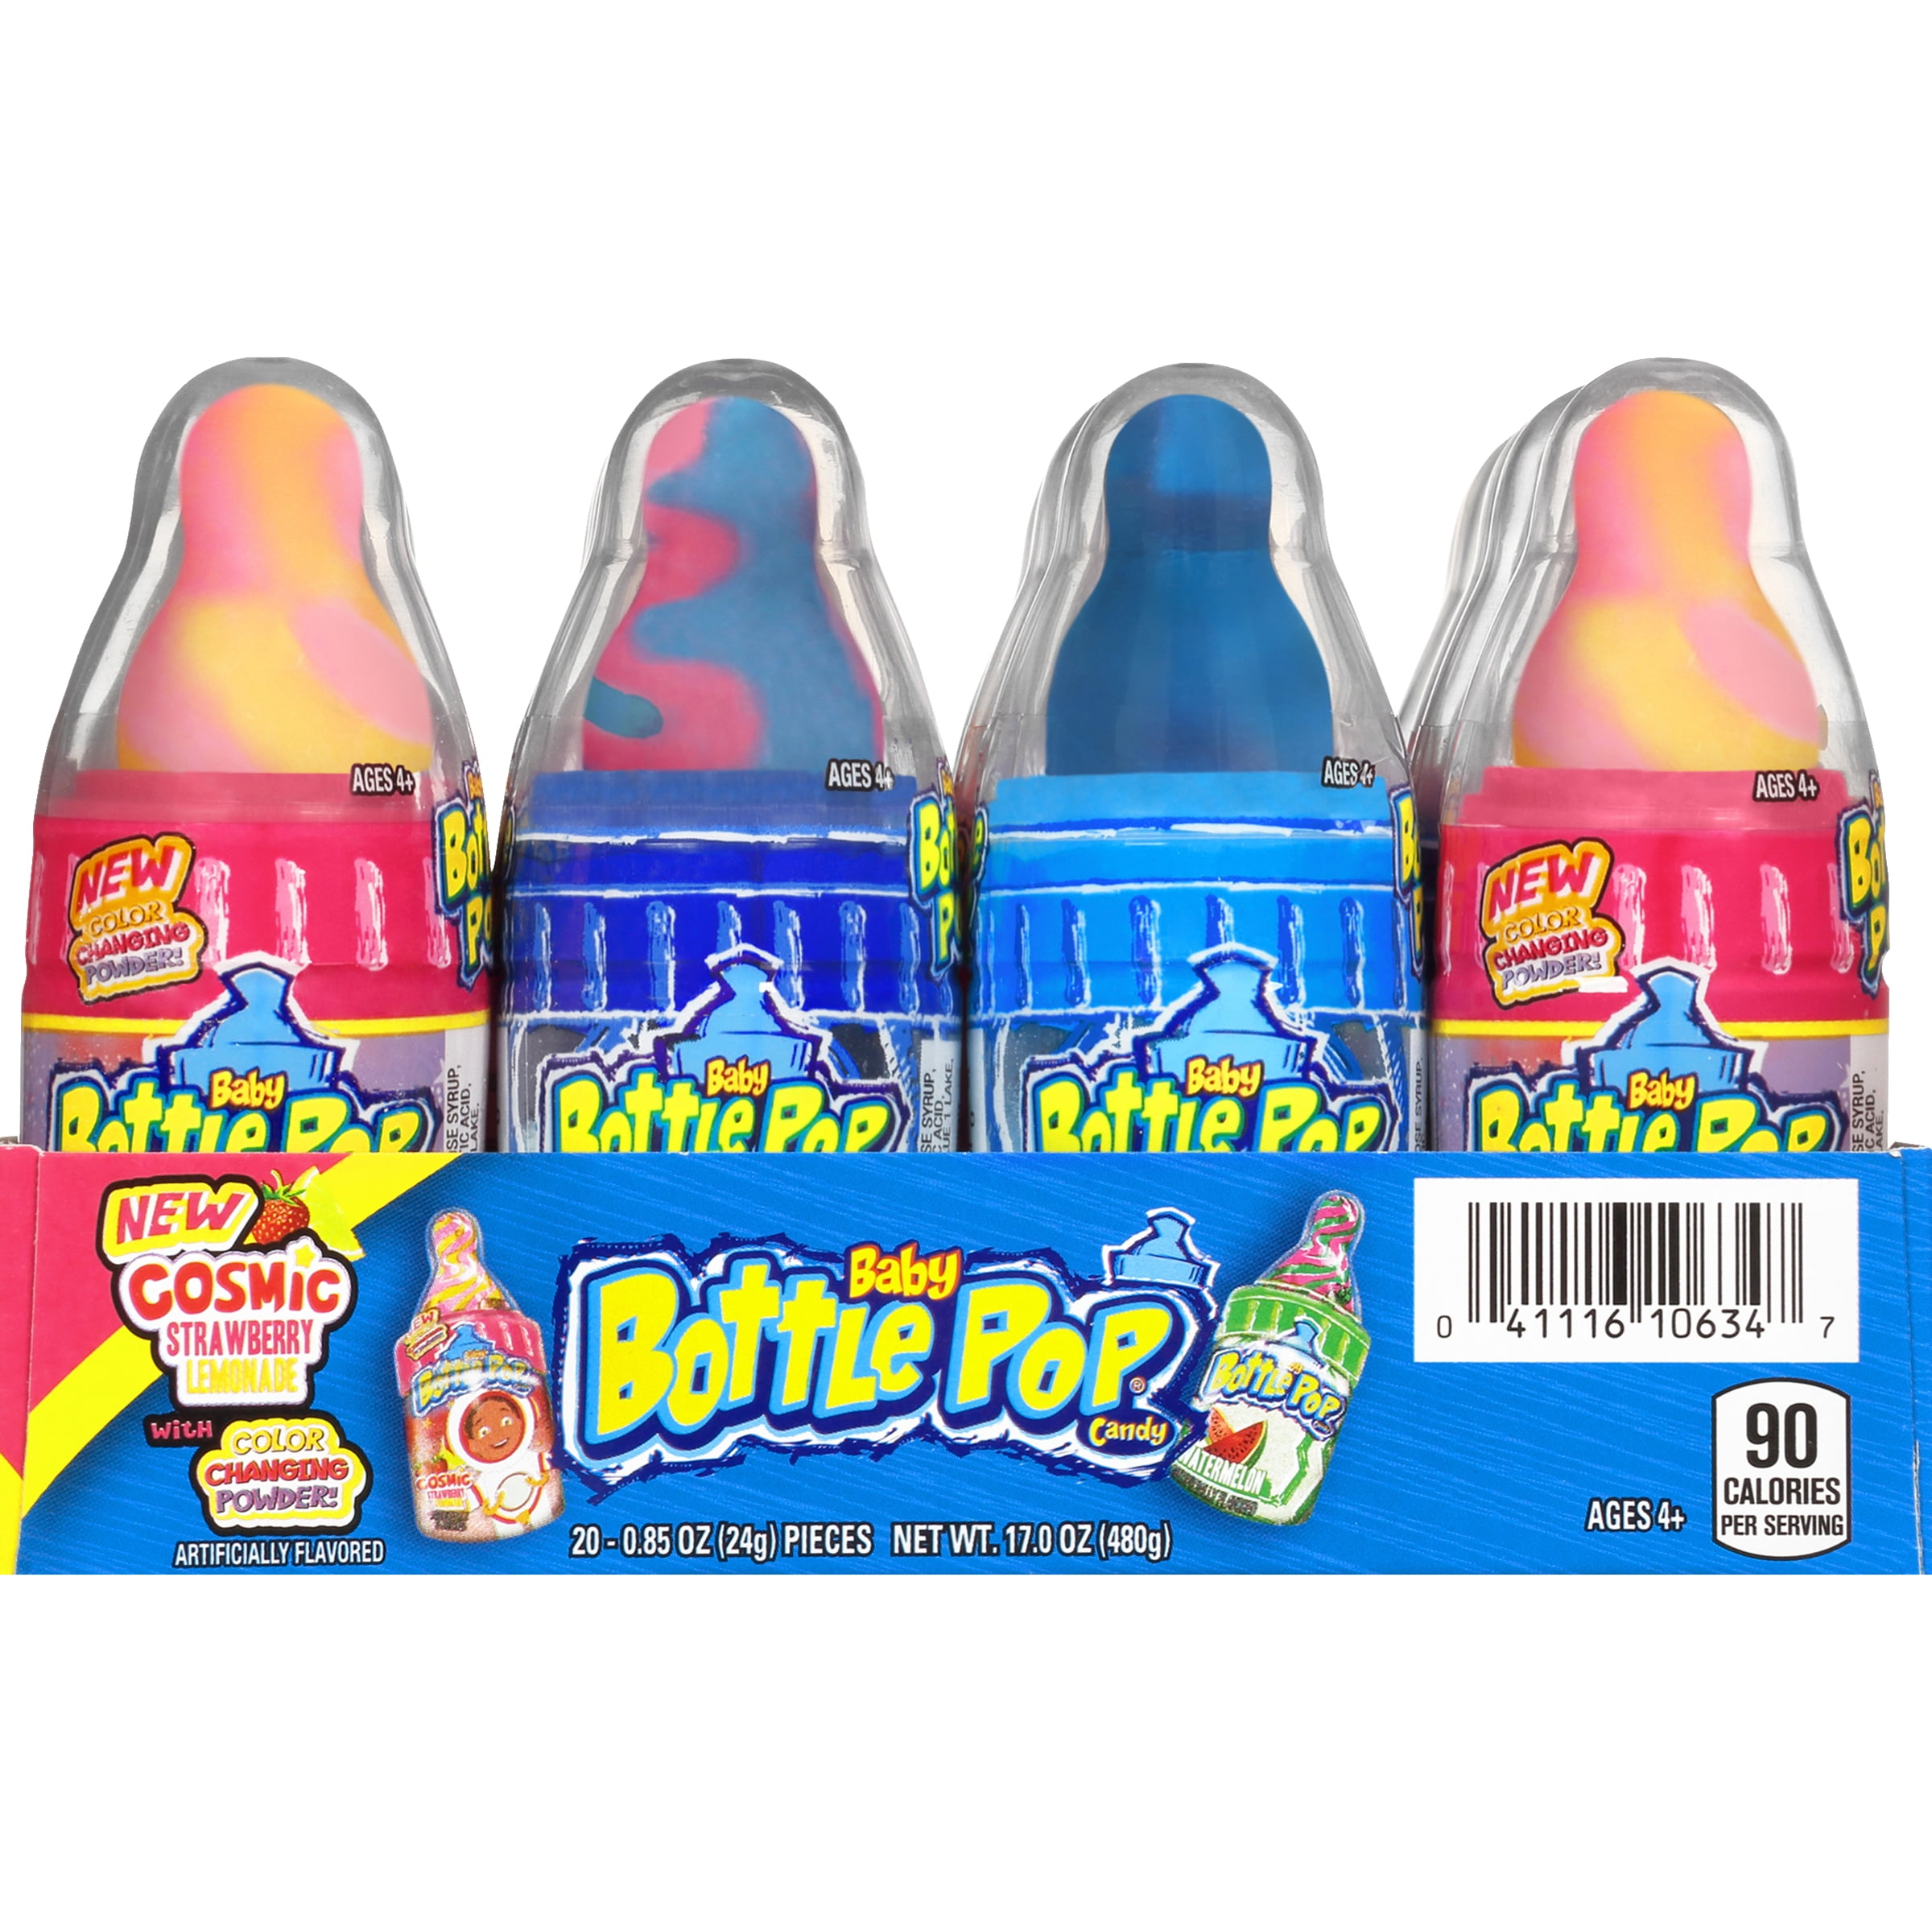 verzameling maak een foto Schaduw Baby Bottle Pop Original, Assorted Flavors Lollipops with Powdered Candy,  .85oz, 20 Count - Walmart.com